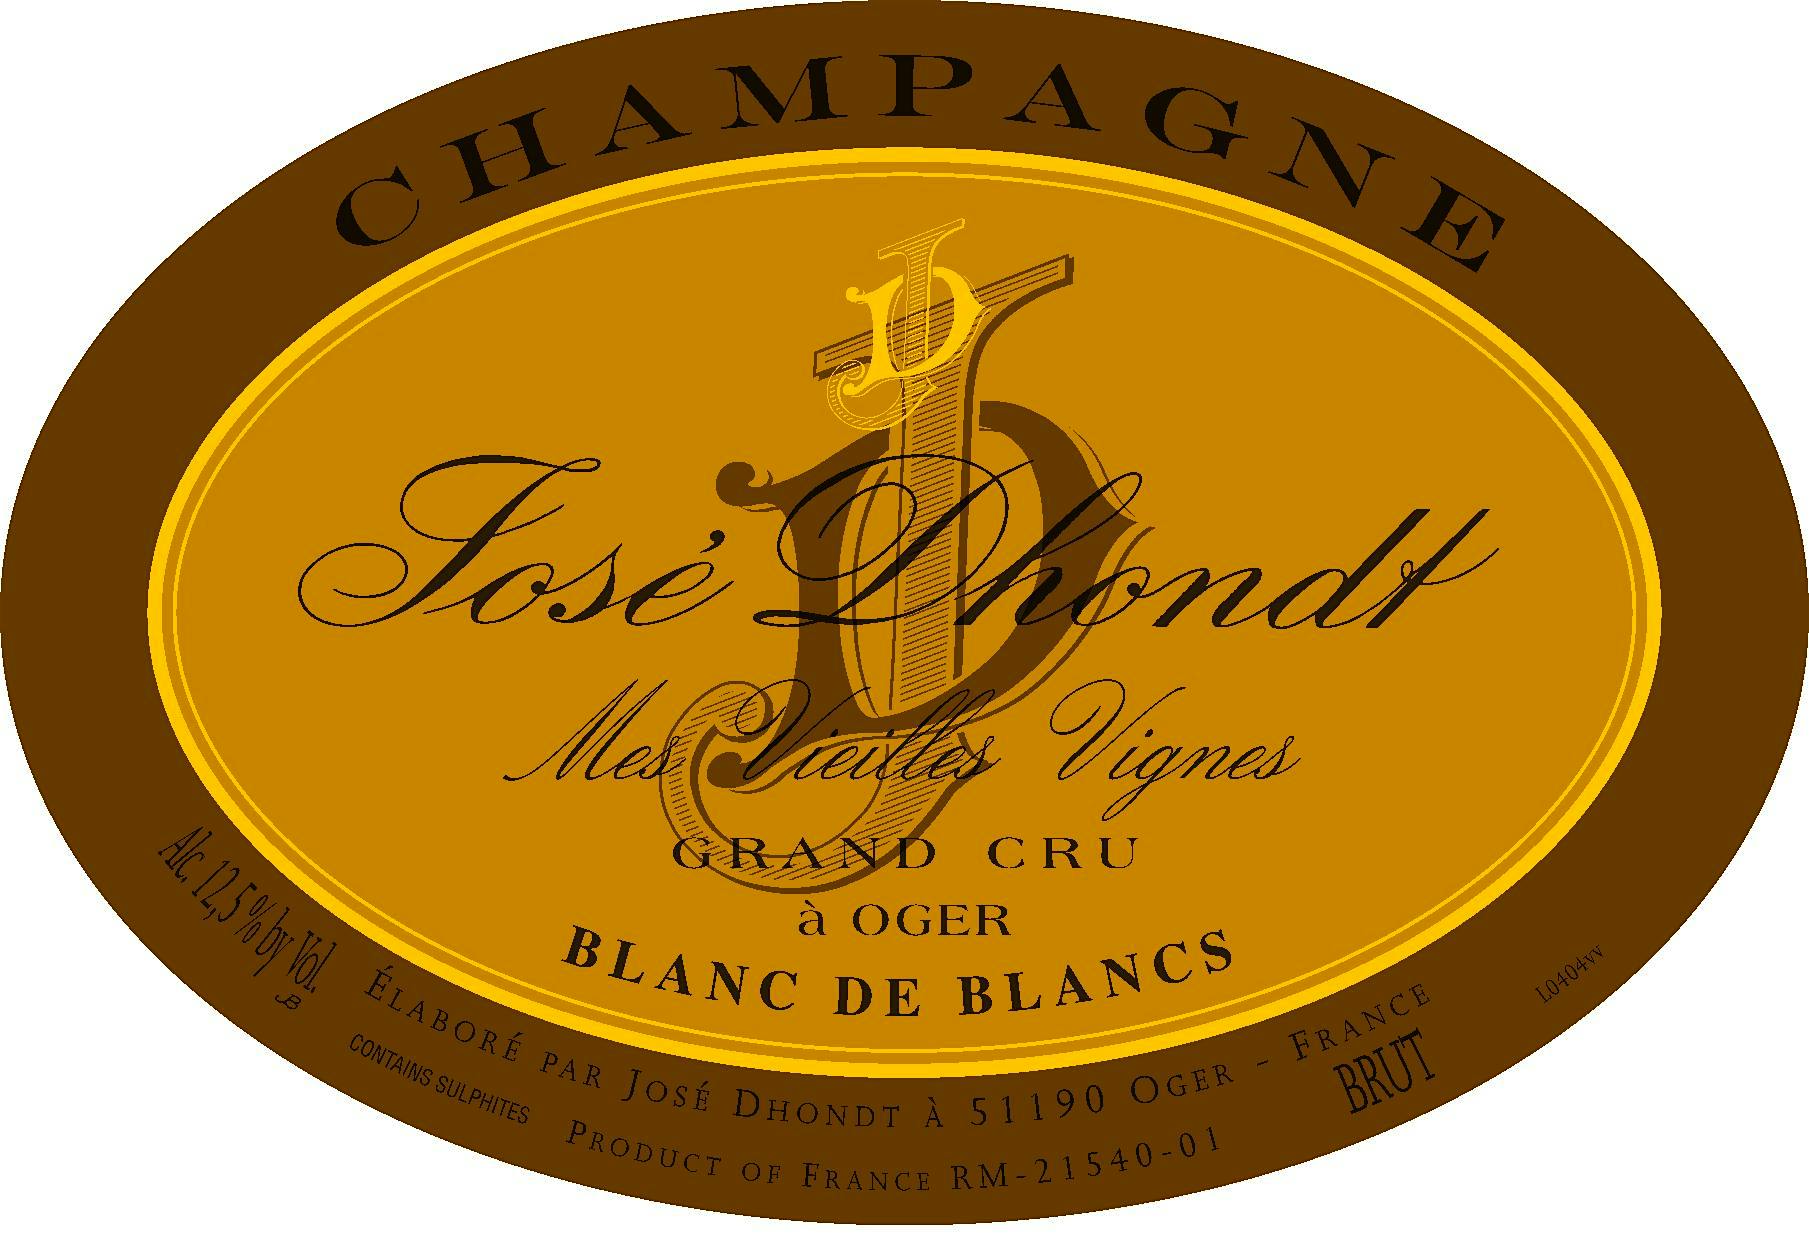 Label for José Dhondt